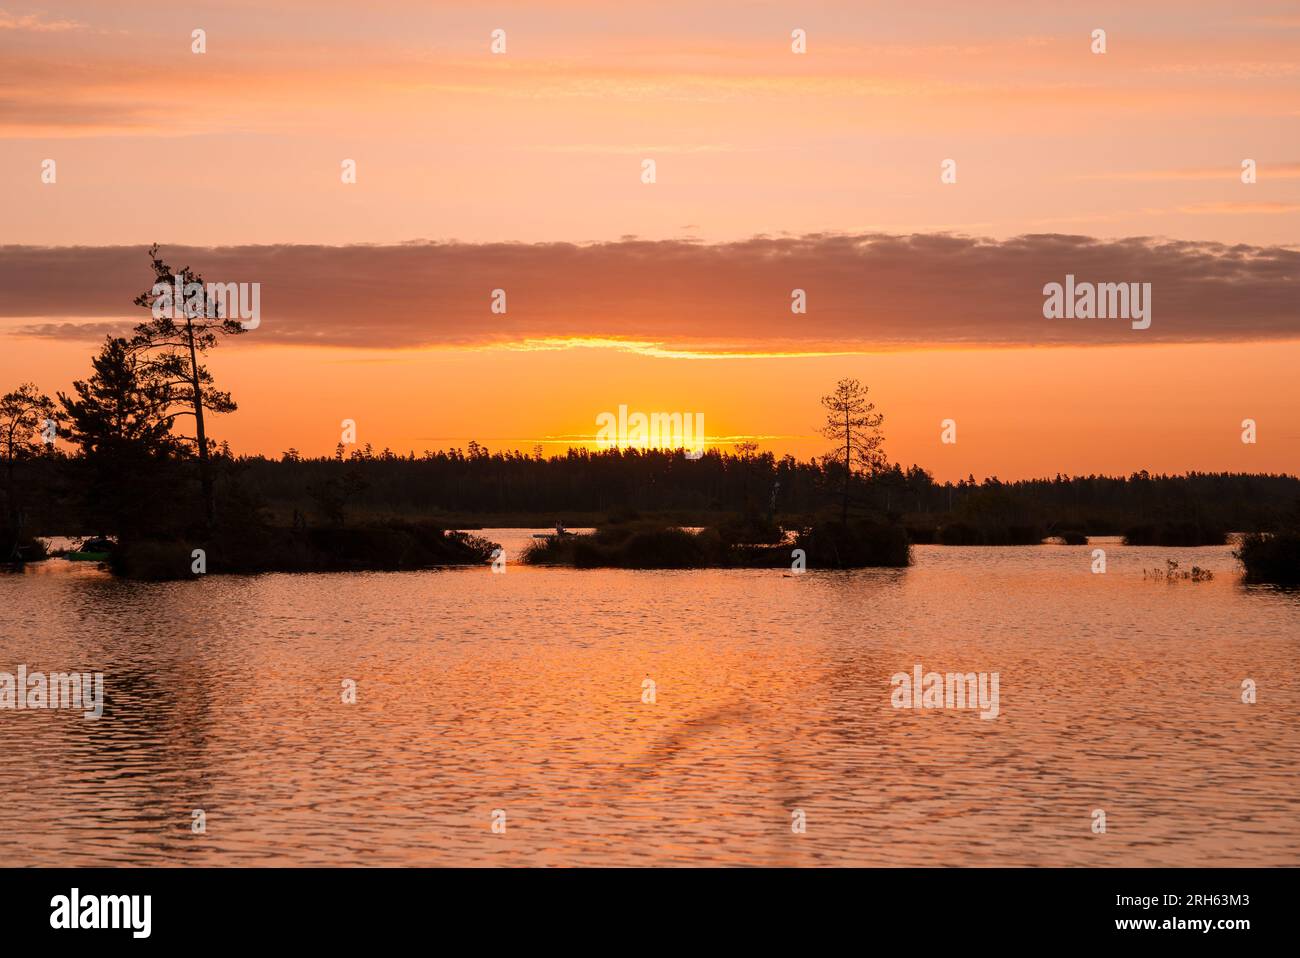 Magical sunrise over the lake.  Stock Photo